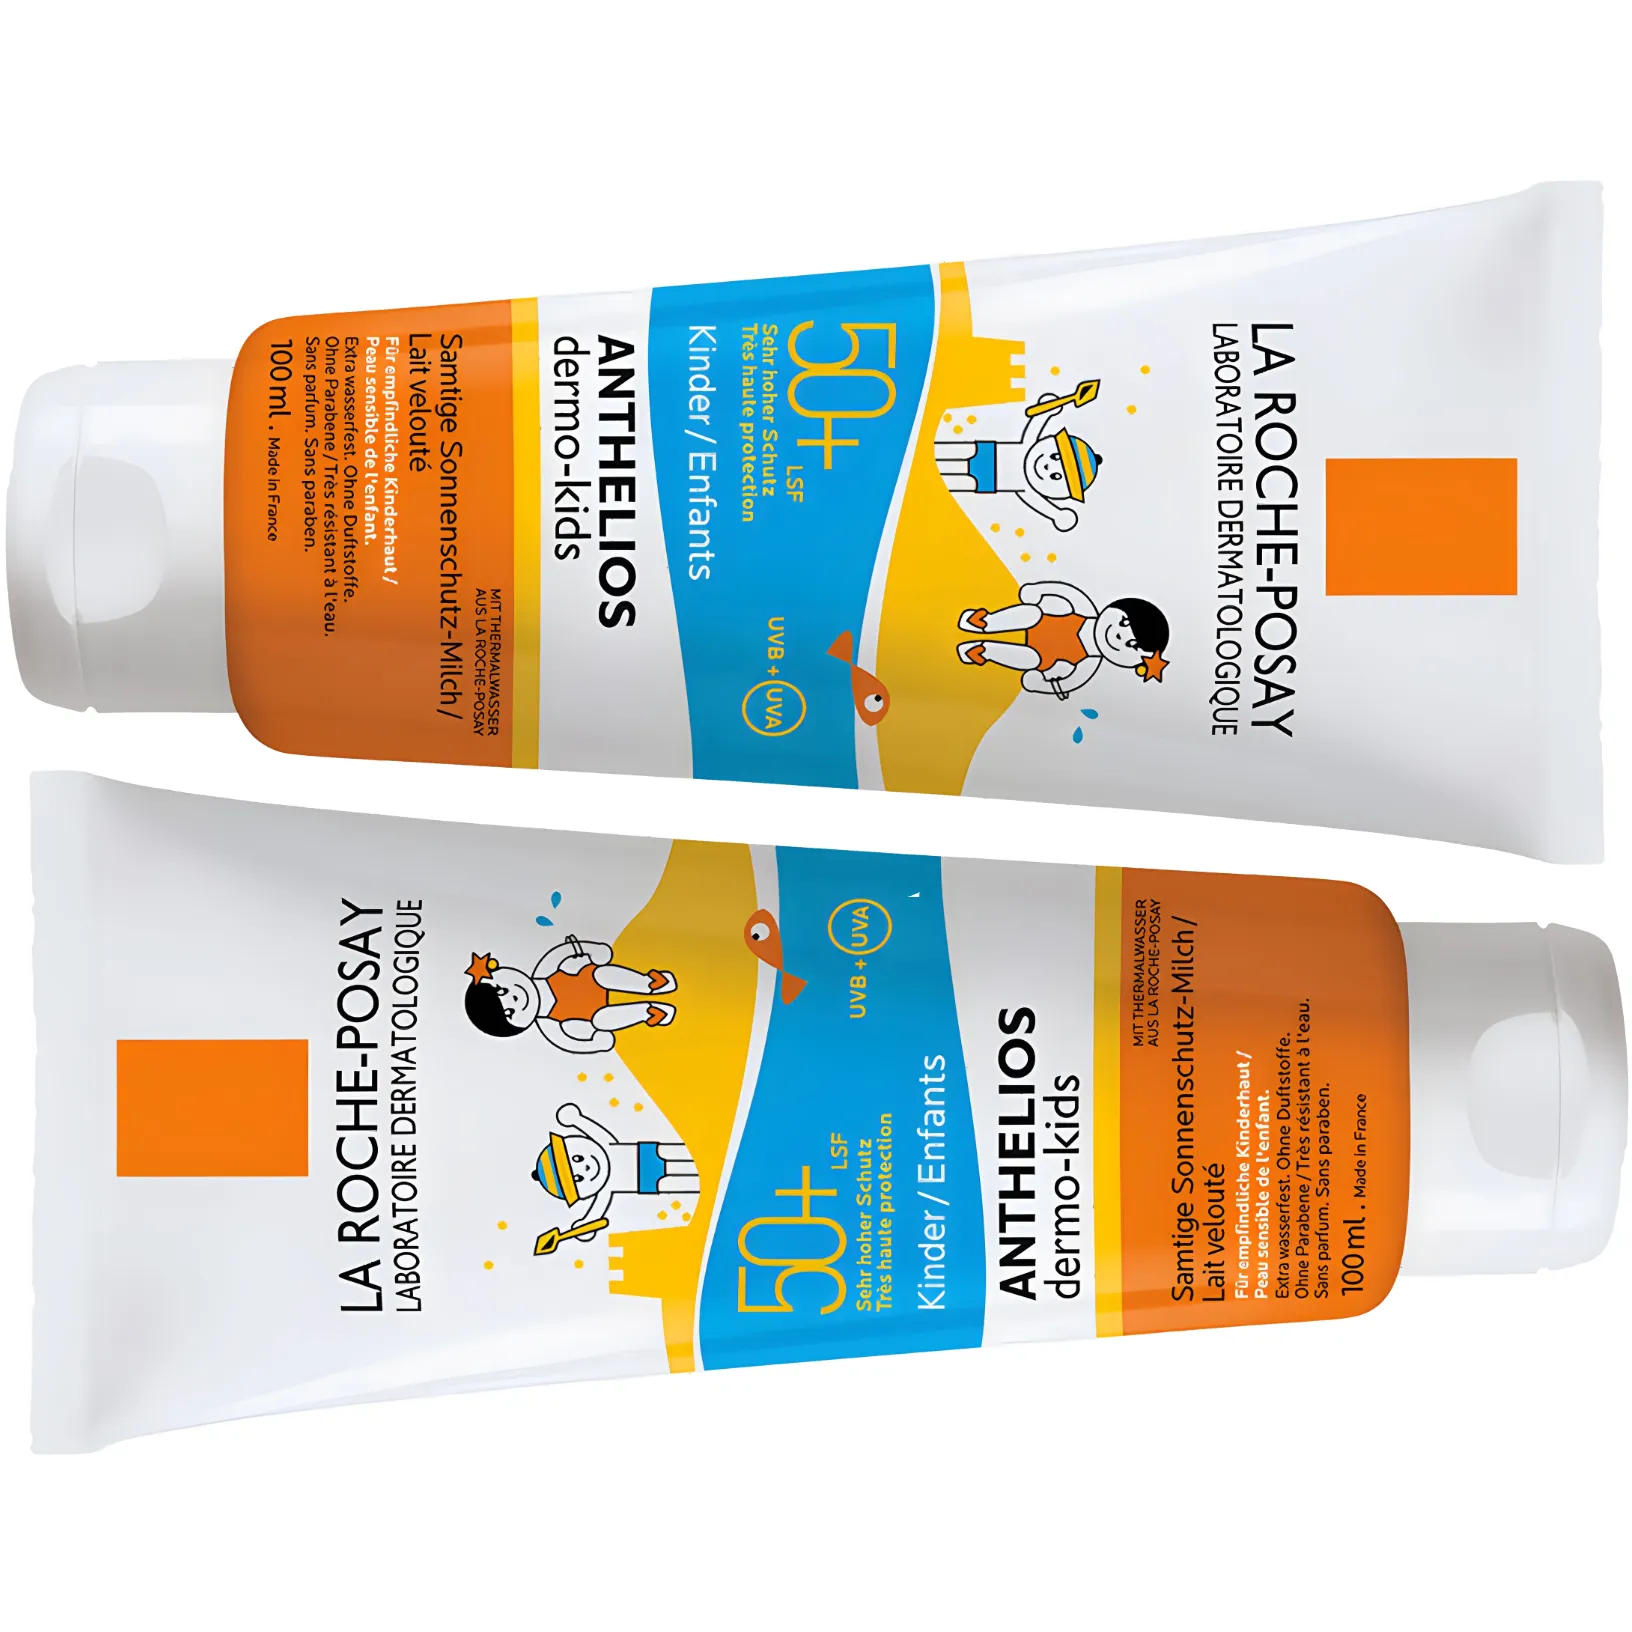 Free La Roche-Posay Sensitive Sunscreen SPF 50 For Kids